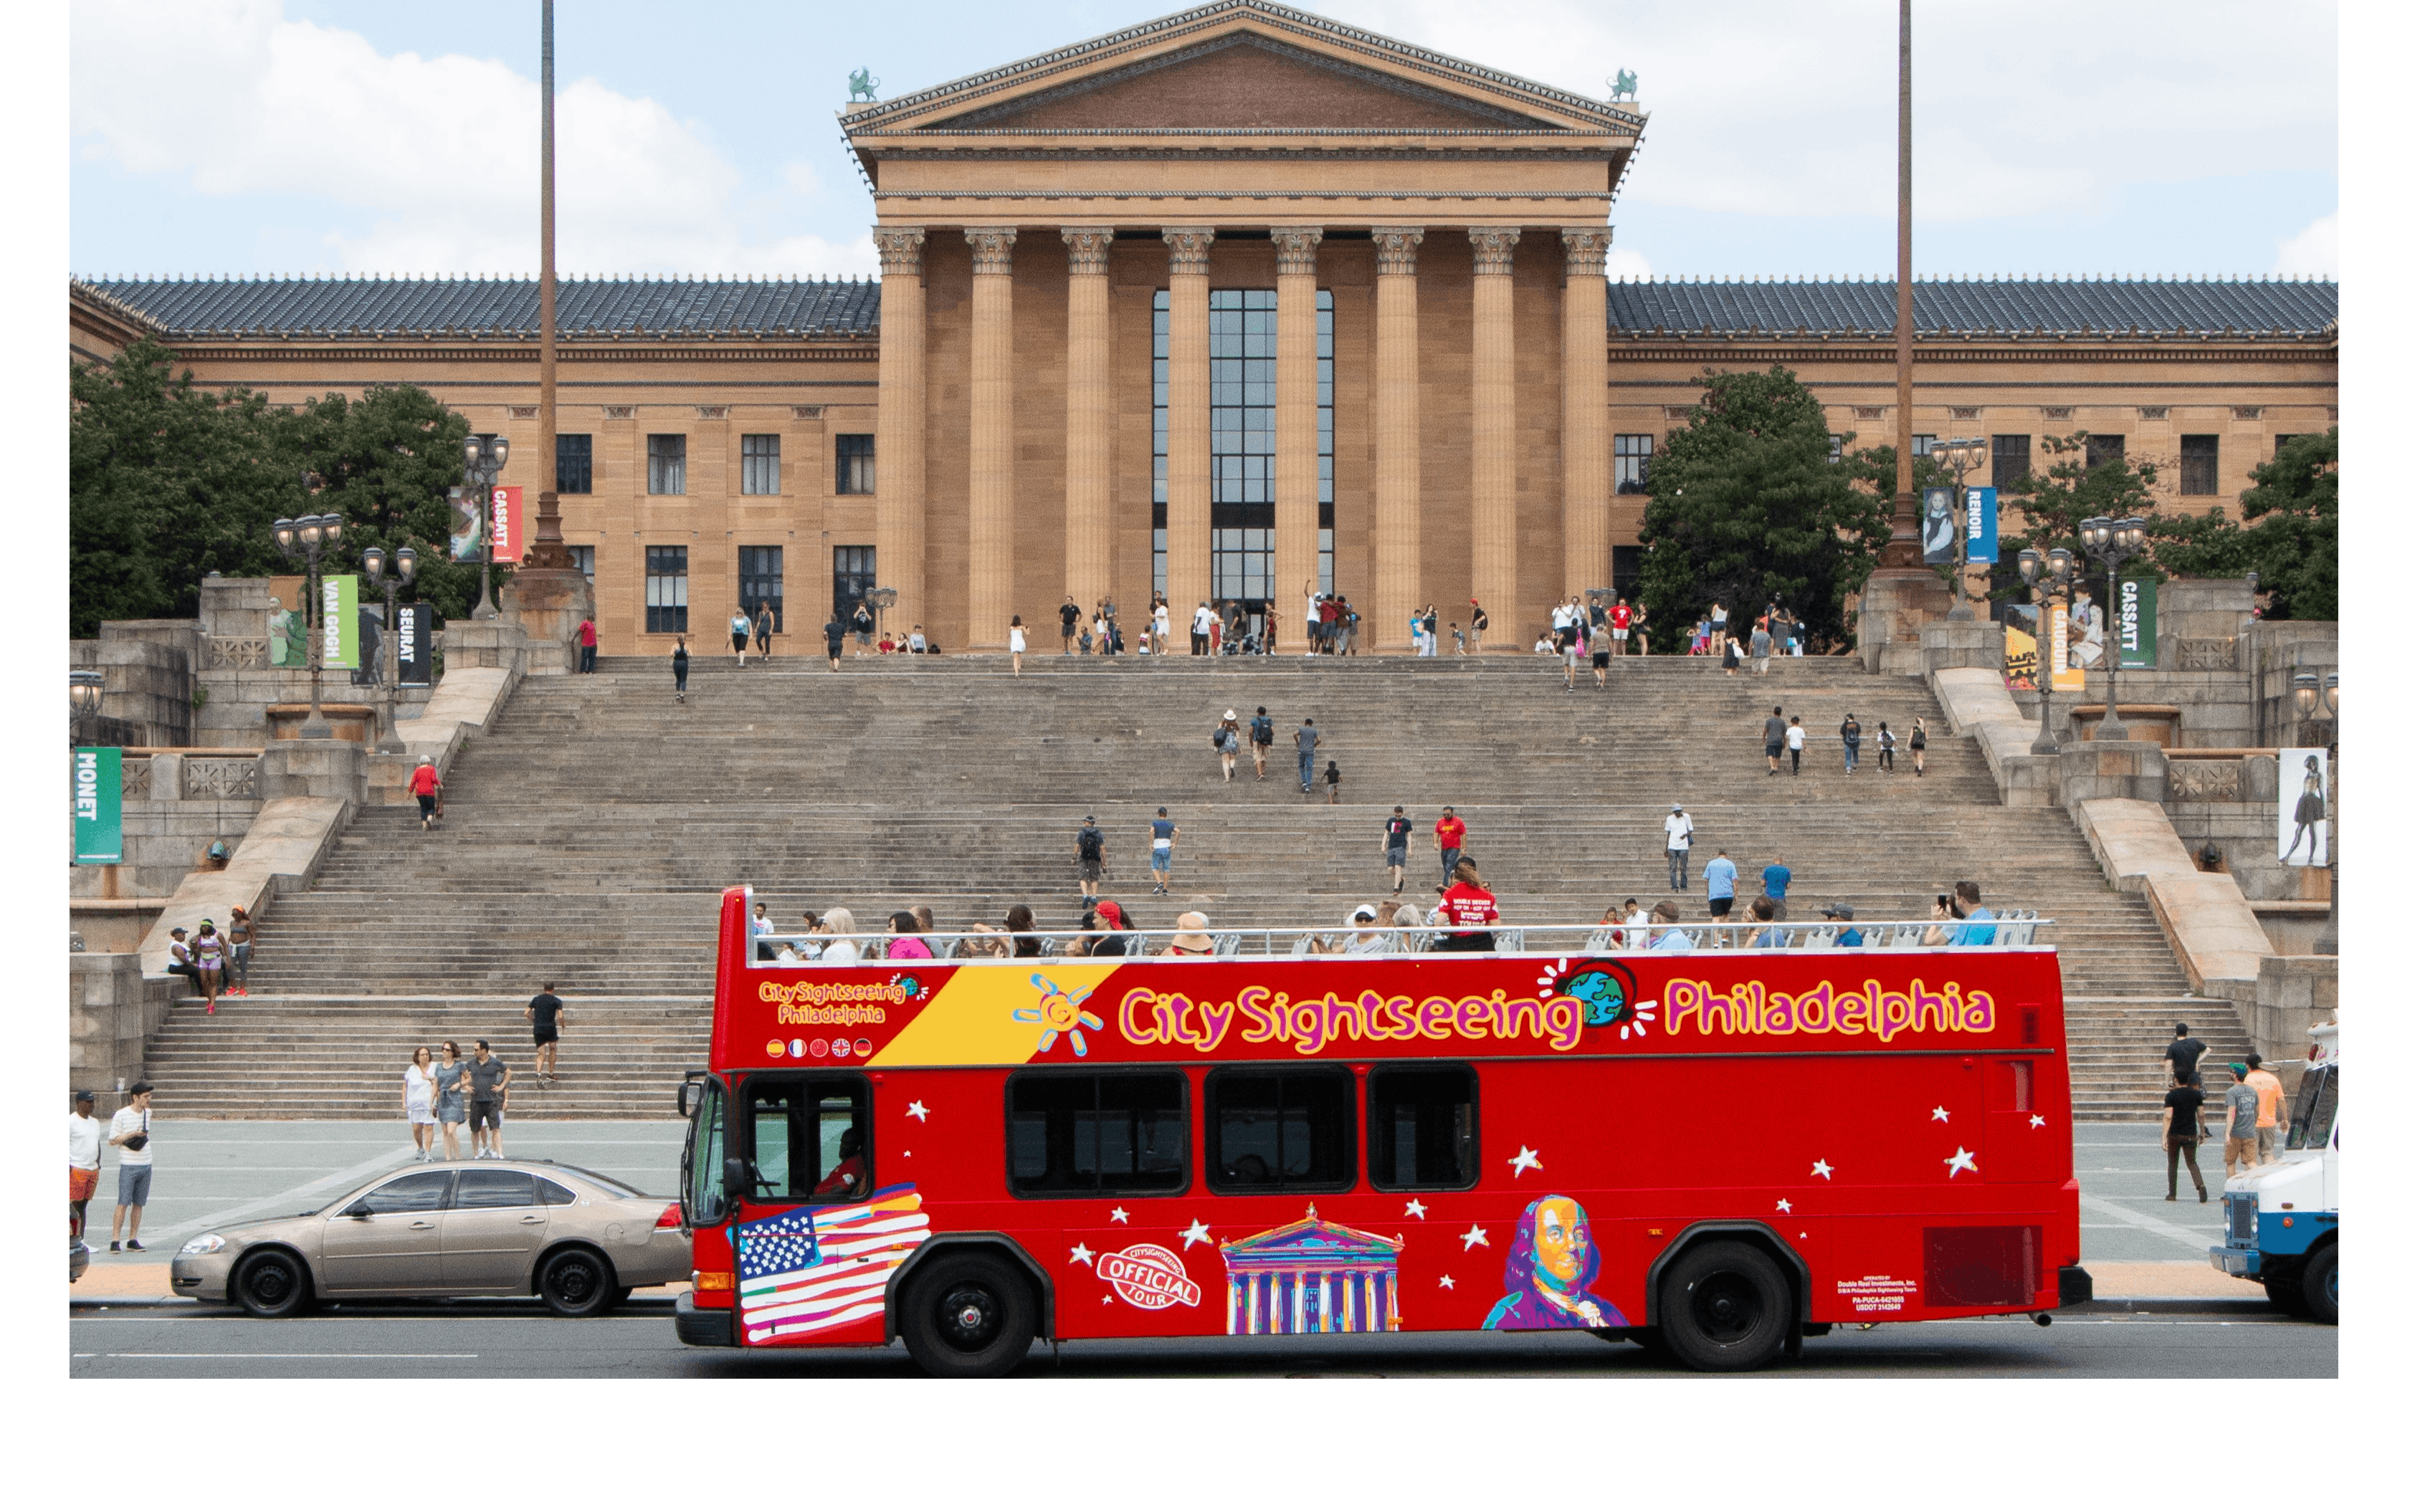 Stadtrundfahrt mit dem Hop-on-Hop-off-Bus durch Philadelphia